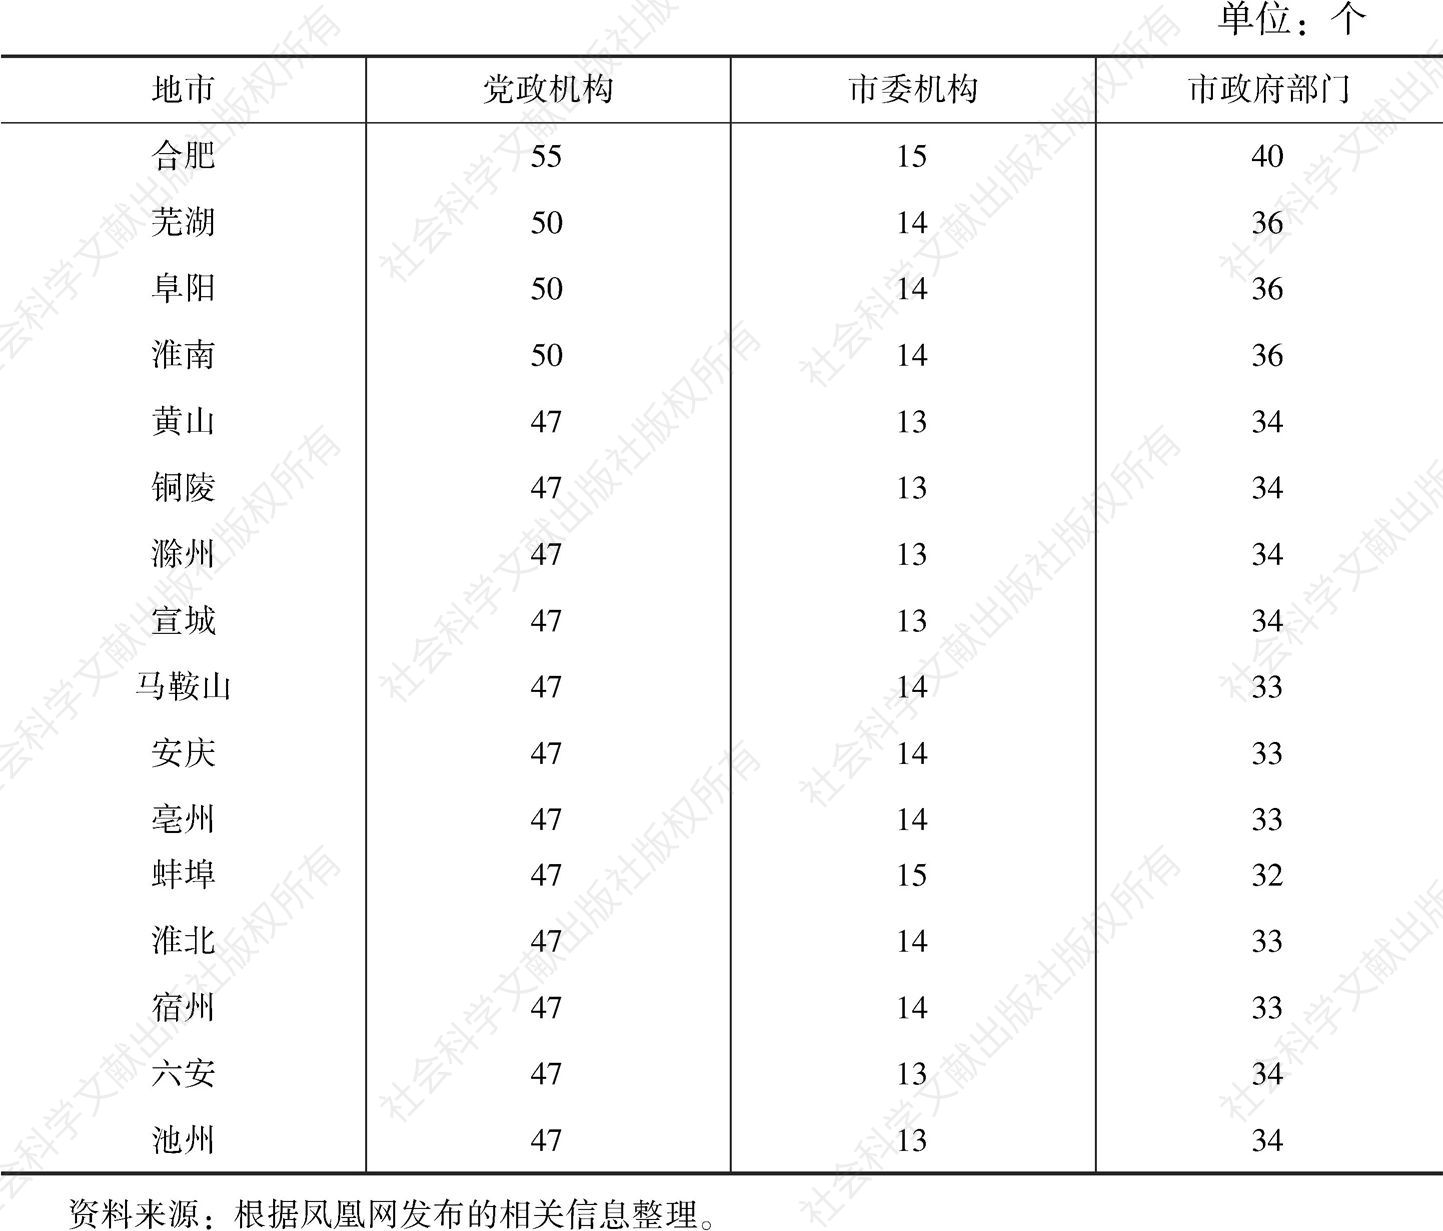 表1 安徽省2019年市级政府机构改革设置